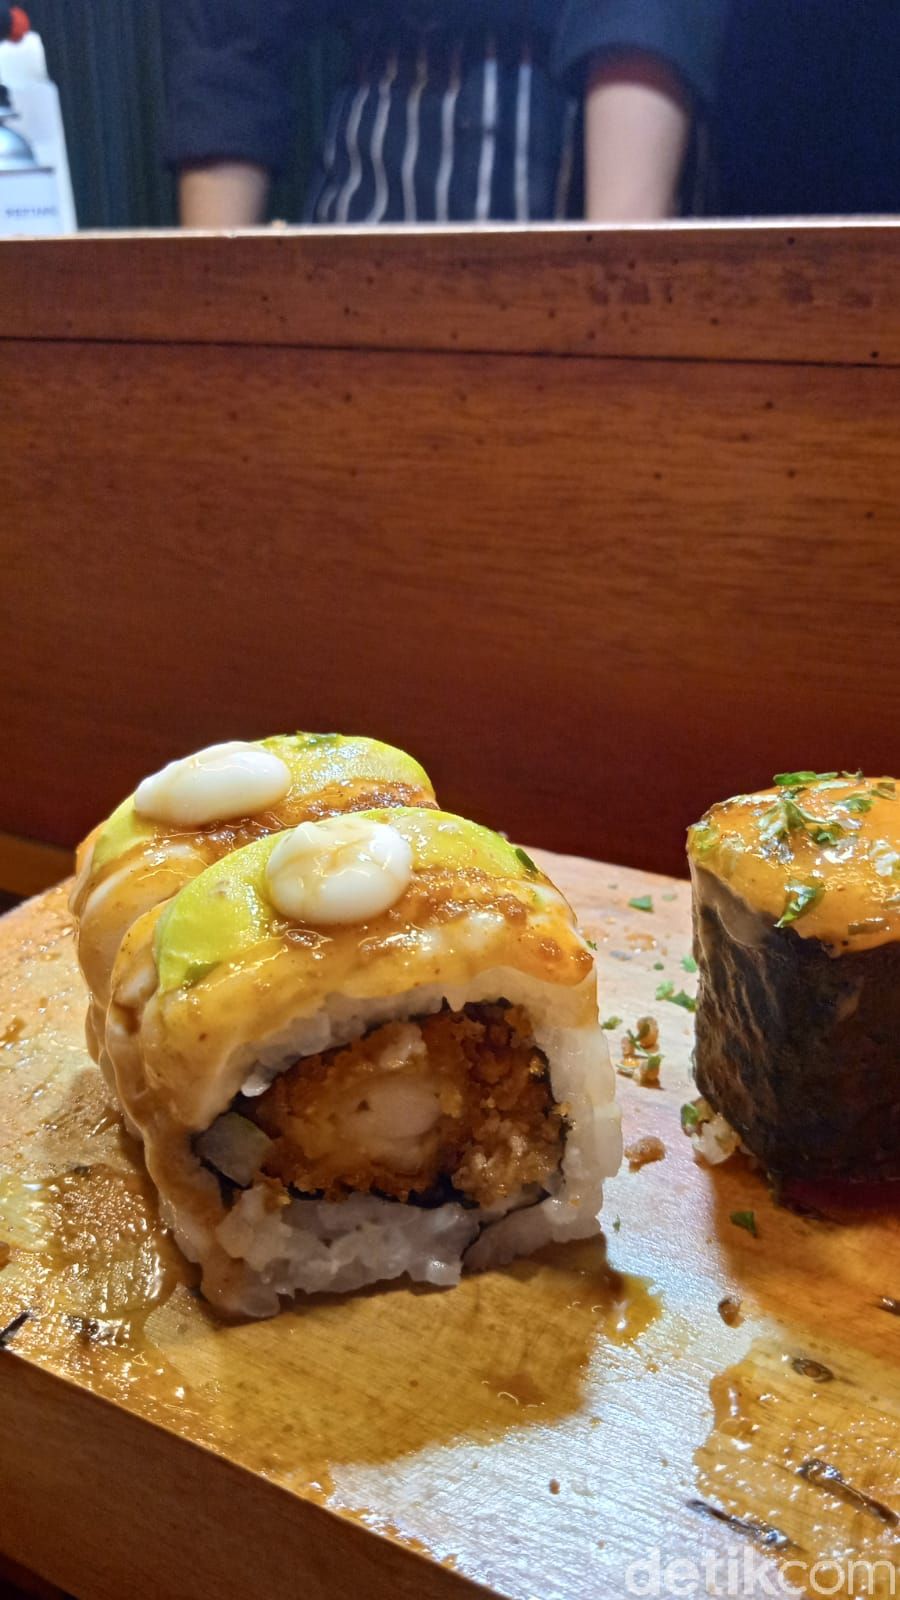 Warunk Sushi: Oishii! Sushi Kaki Lima Rp 10 Ribuan Buatan Mantan Chef Hotel